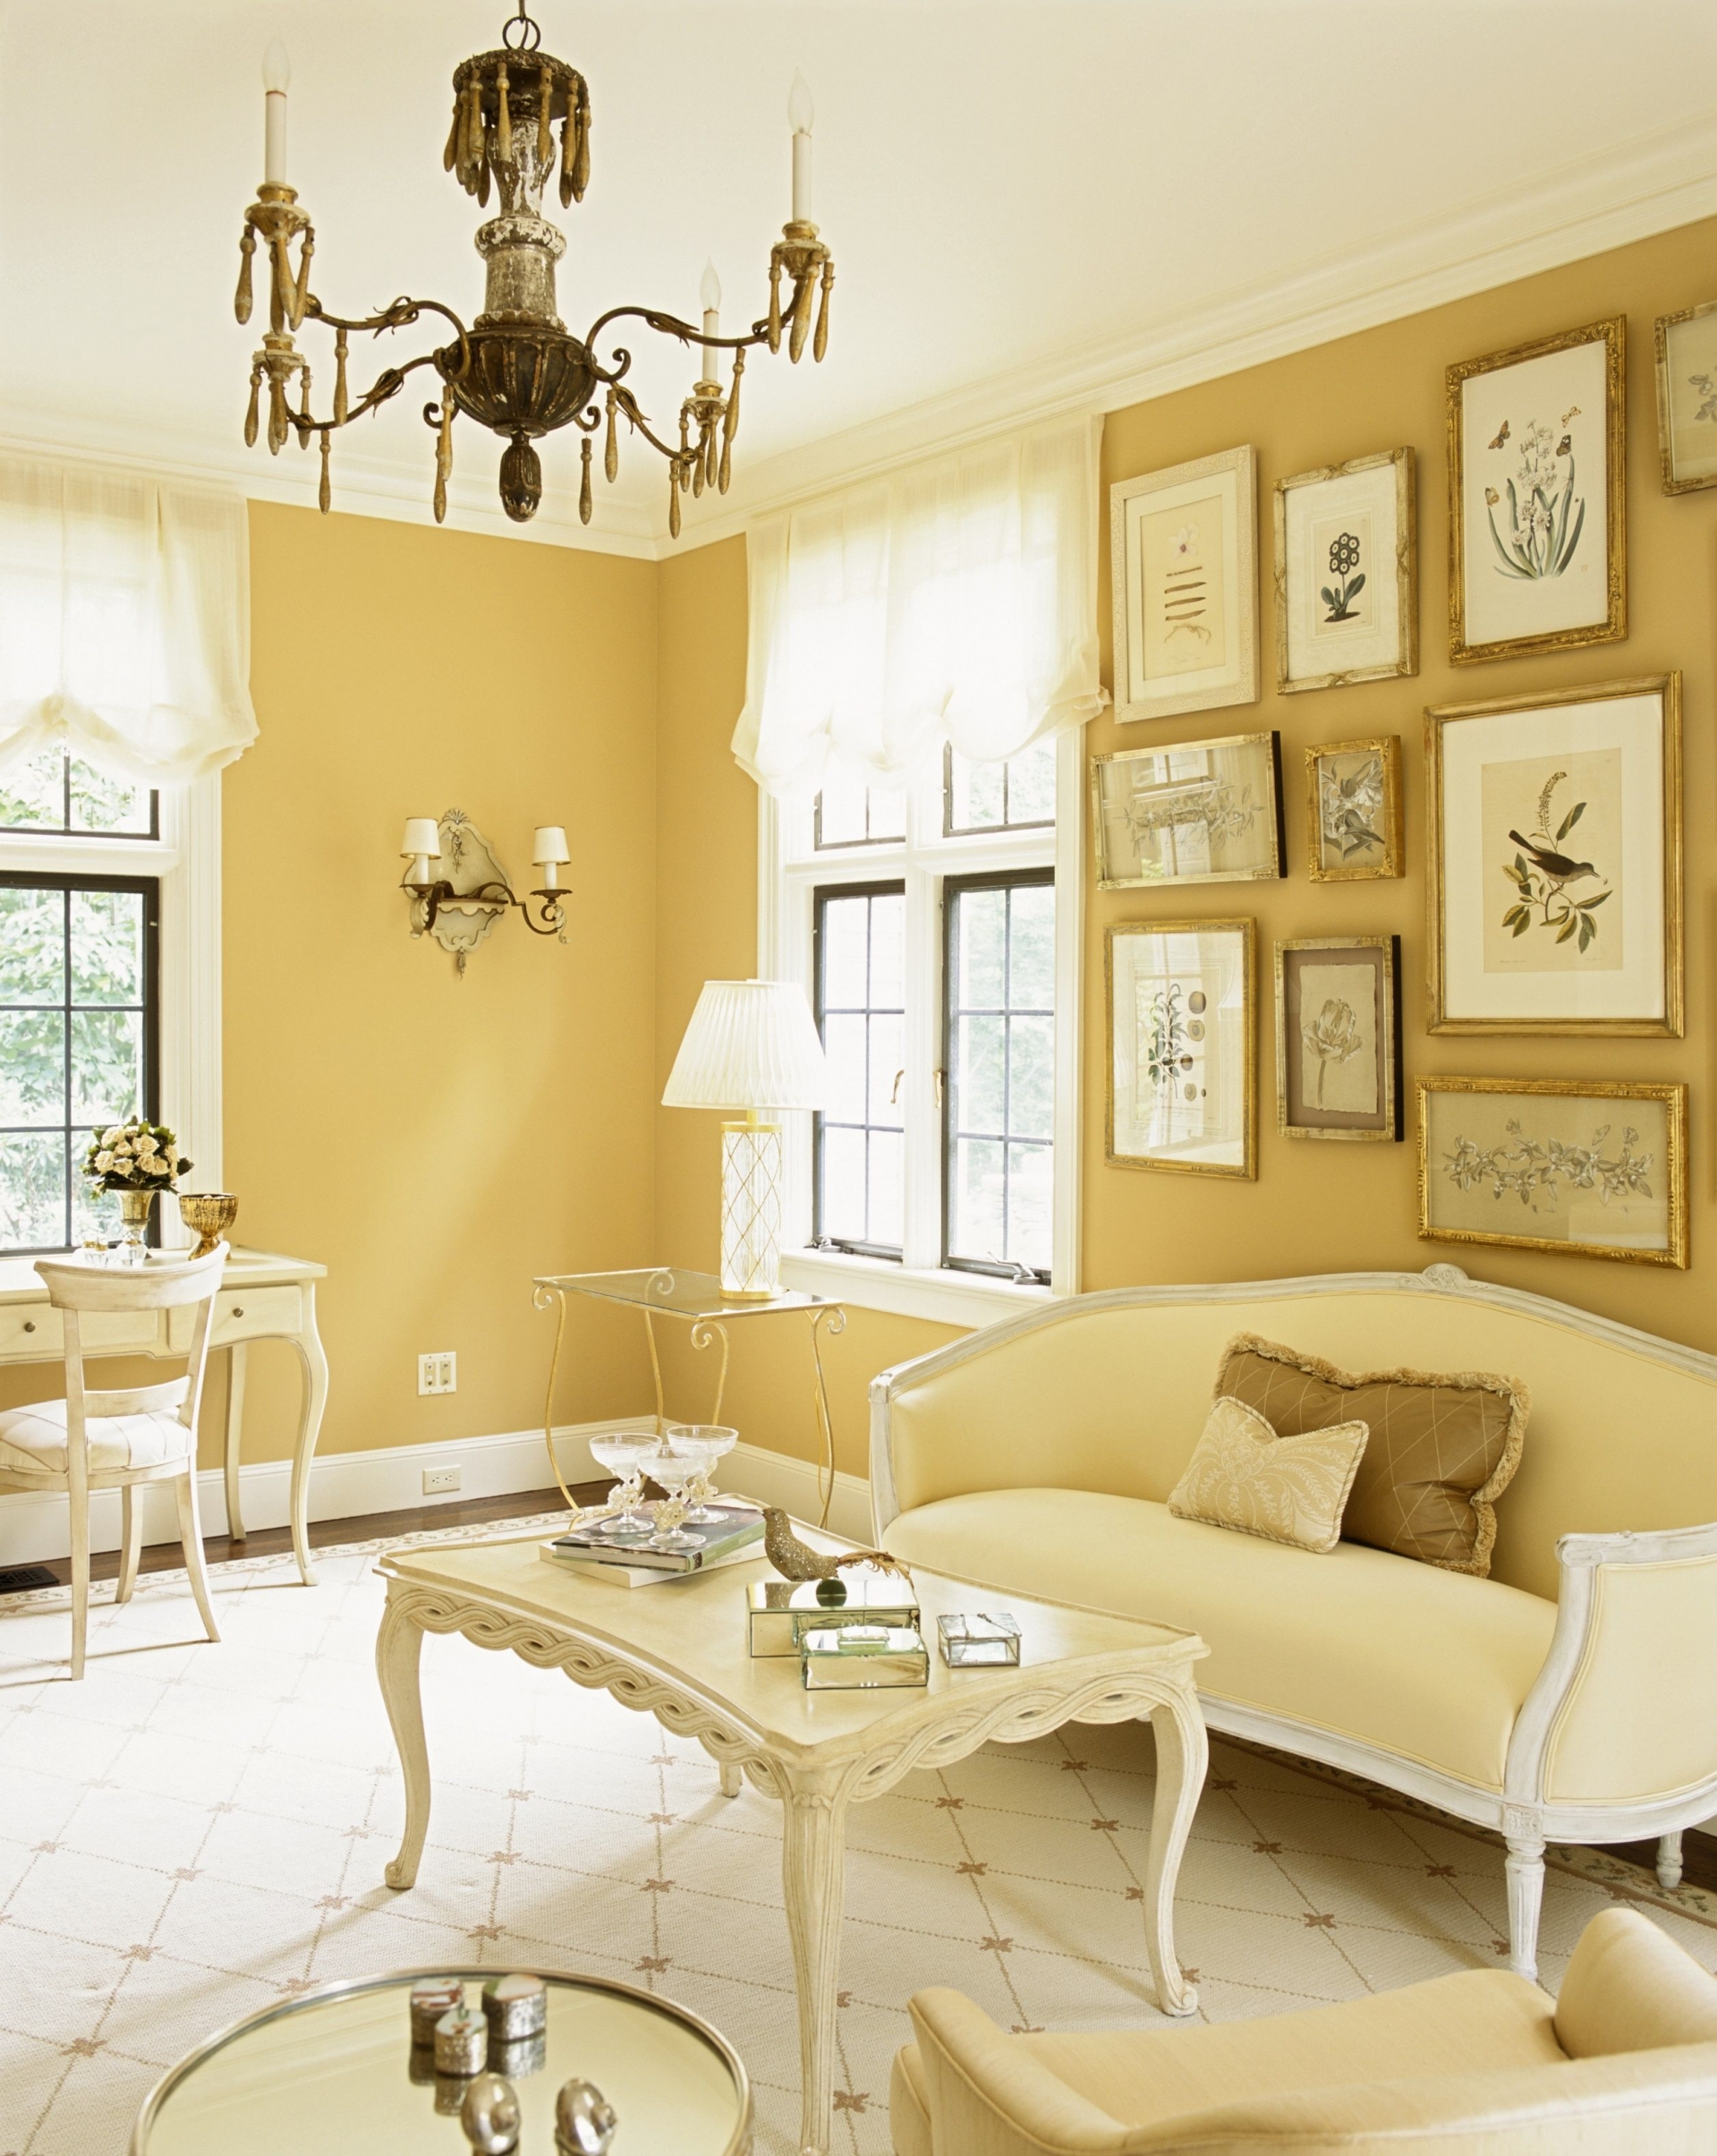 Có đến 2 tone màu vàng đậm - nhạt kết hợp trong phòng khách xinh đẹp này. Nội thất thiết kế phong cách cổ điển, tuy không có quá nhiều màu sắc nhưng vẫn tạo được các lớp lang màu sắc trang nhã.